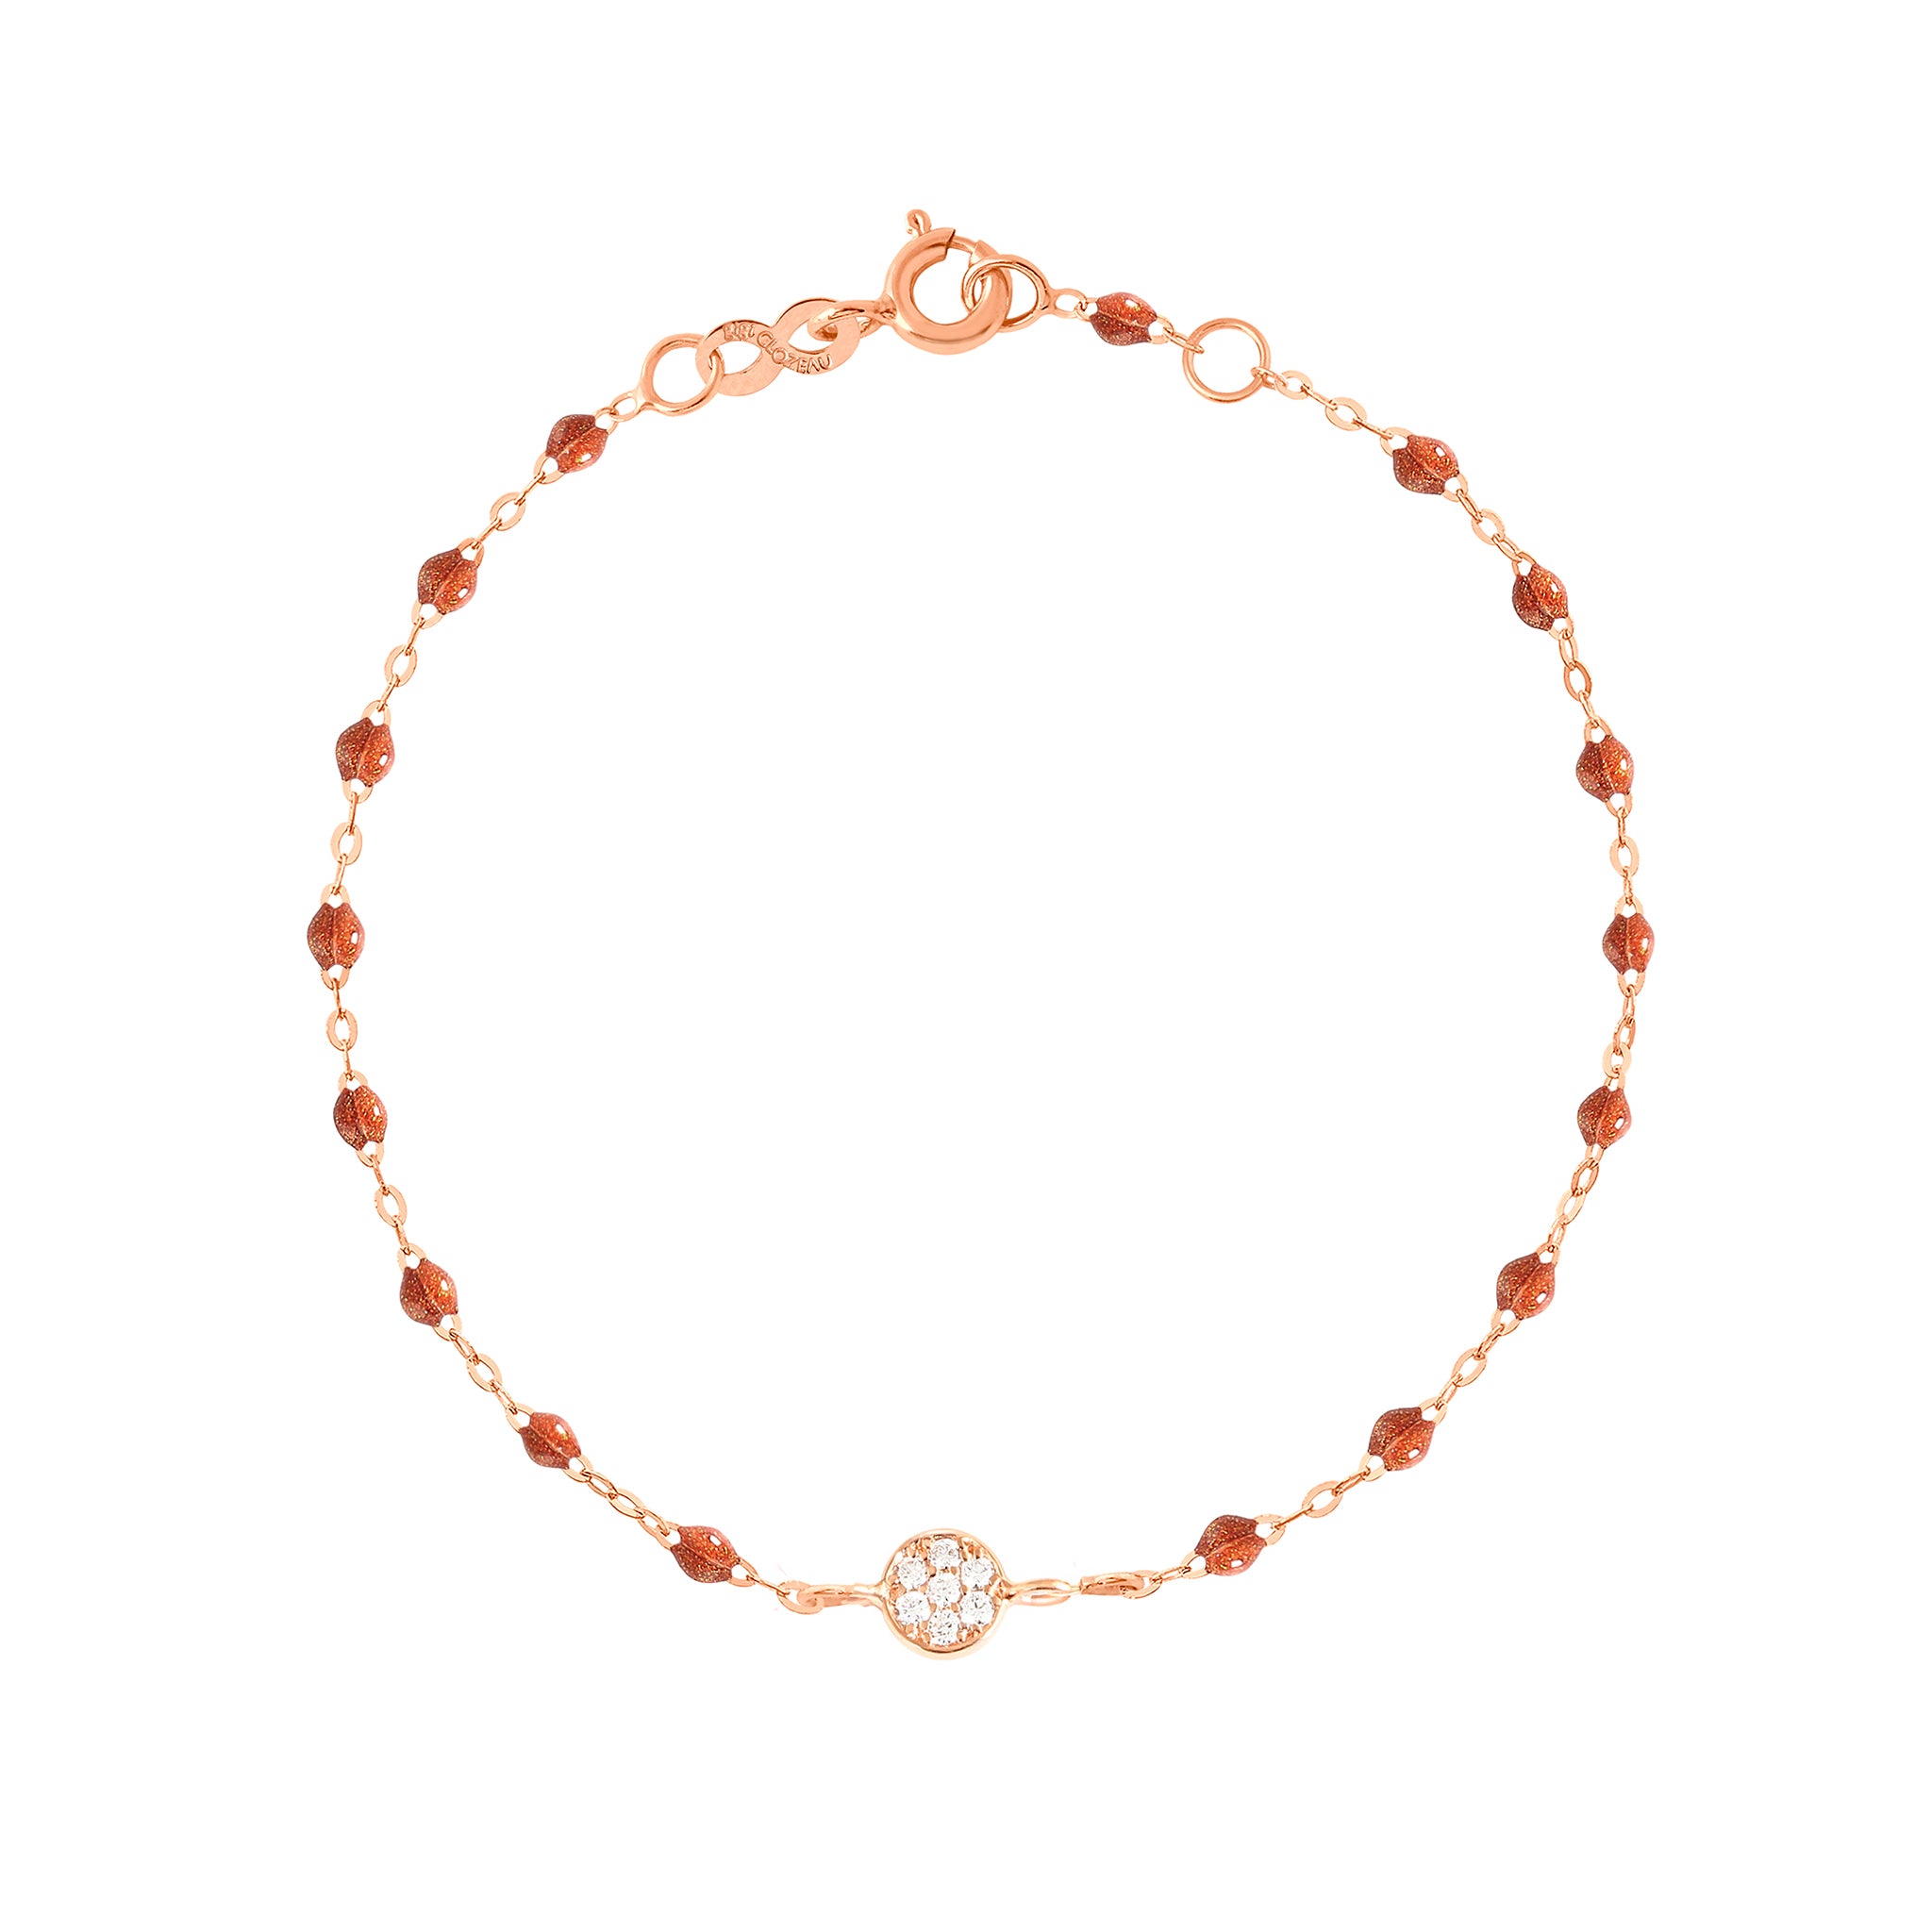 Bracelet fauve Puce diamants, or rose, 17 cm pirate Référence :  b3pu002r5917di -1